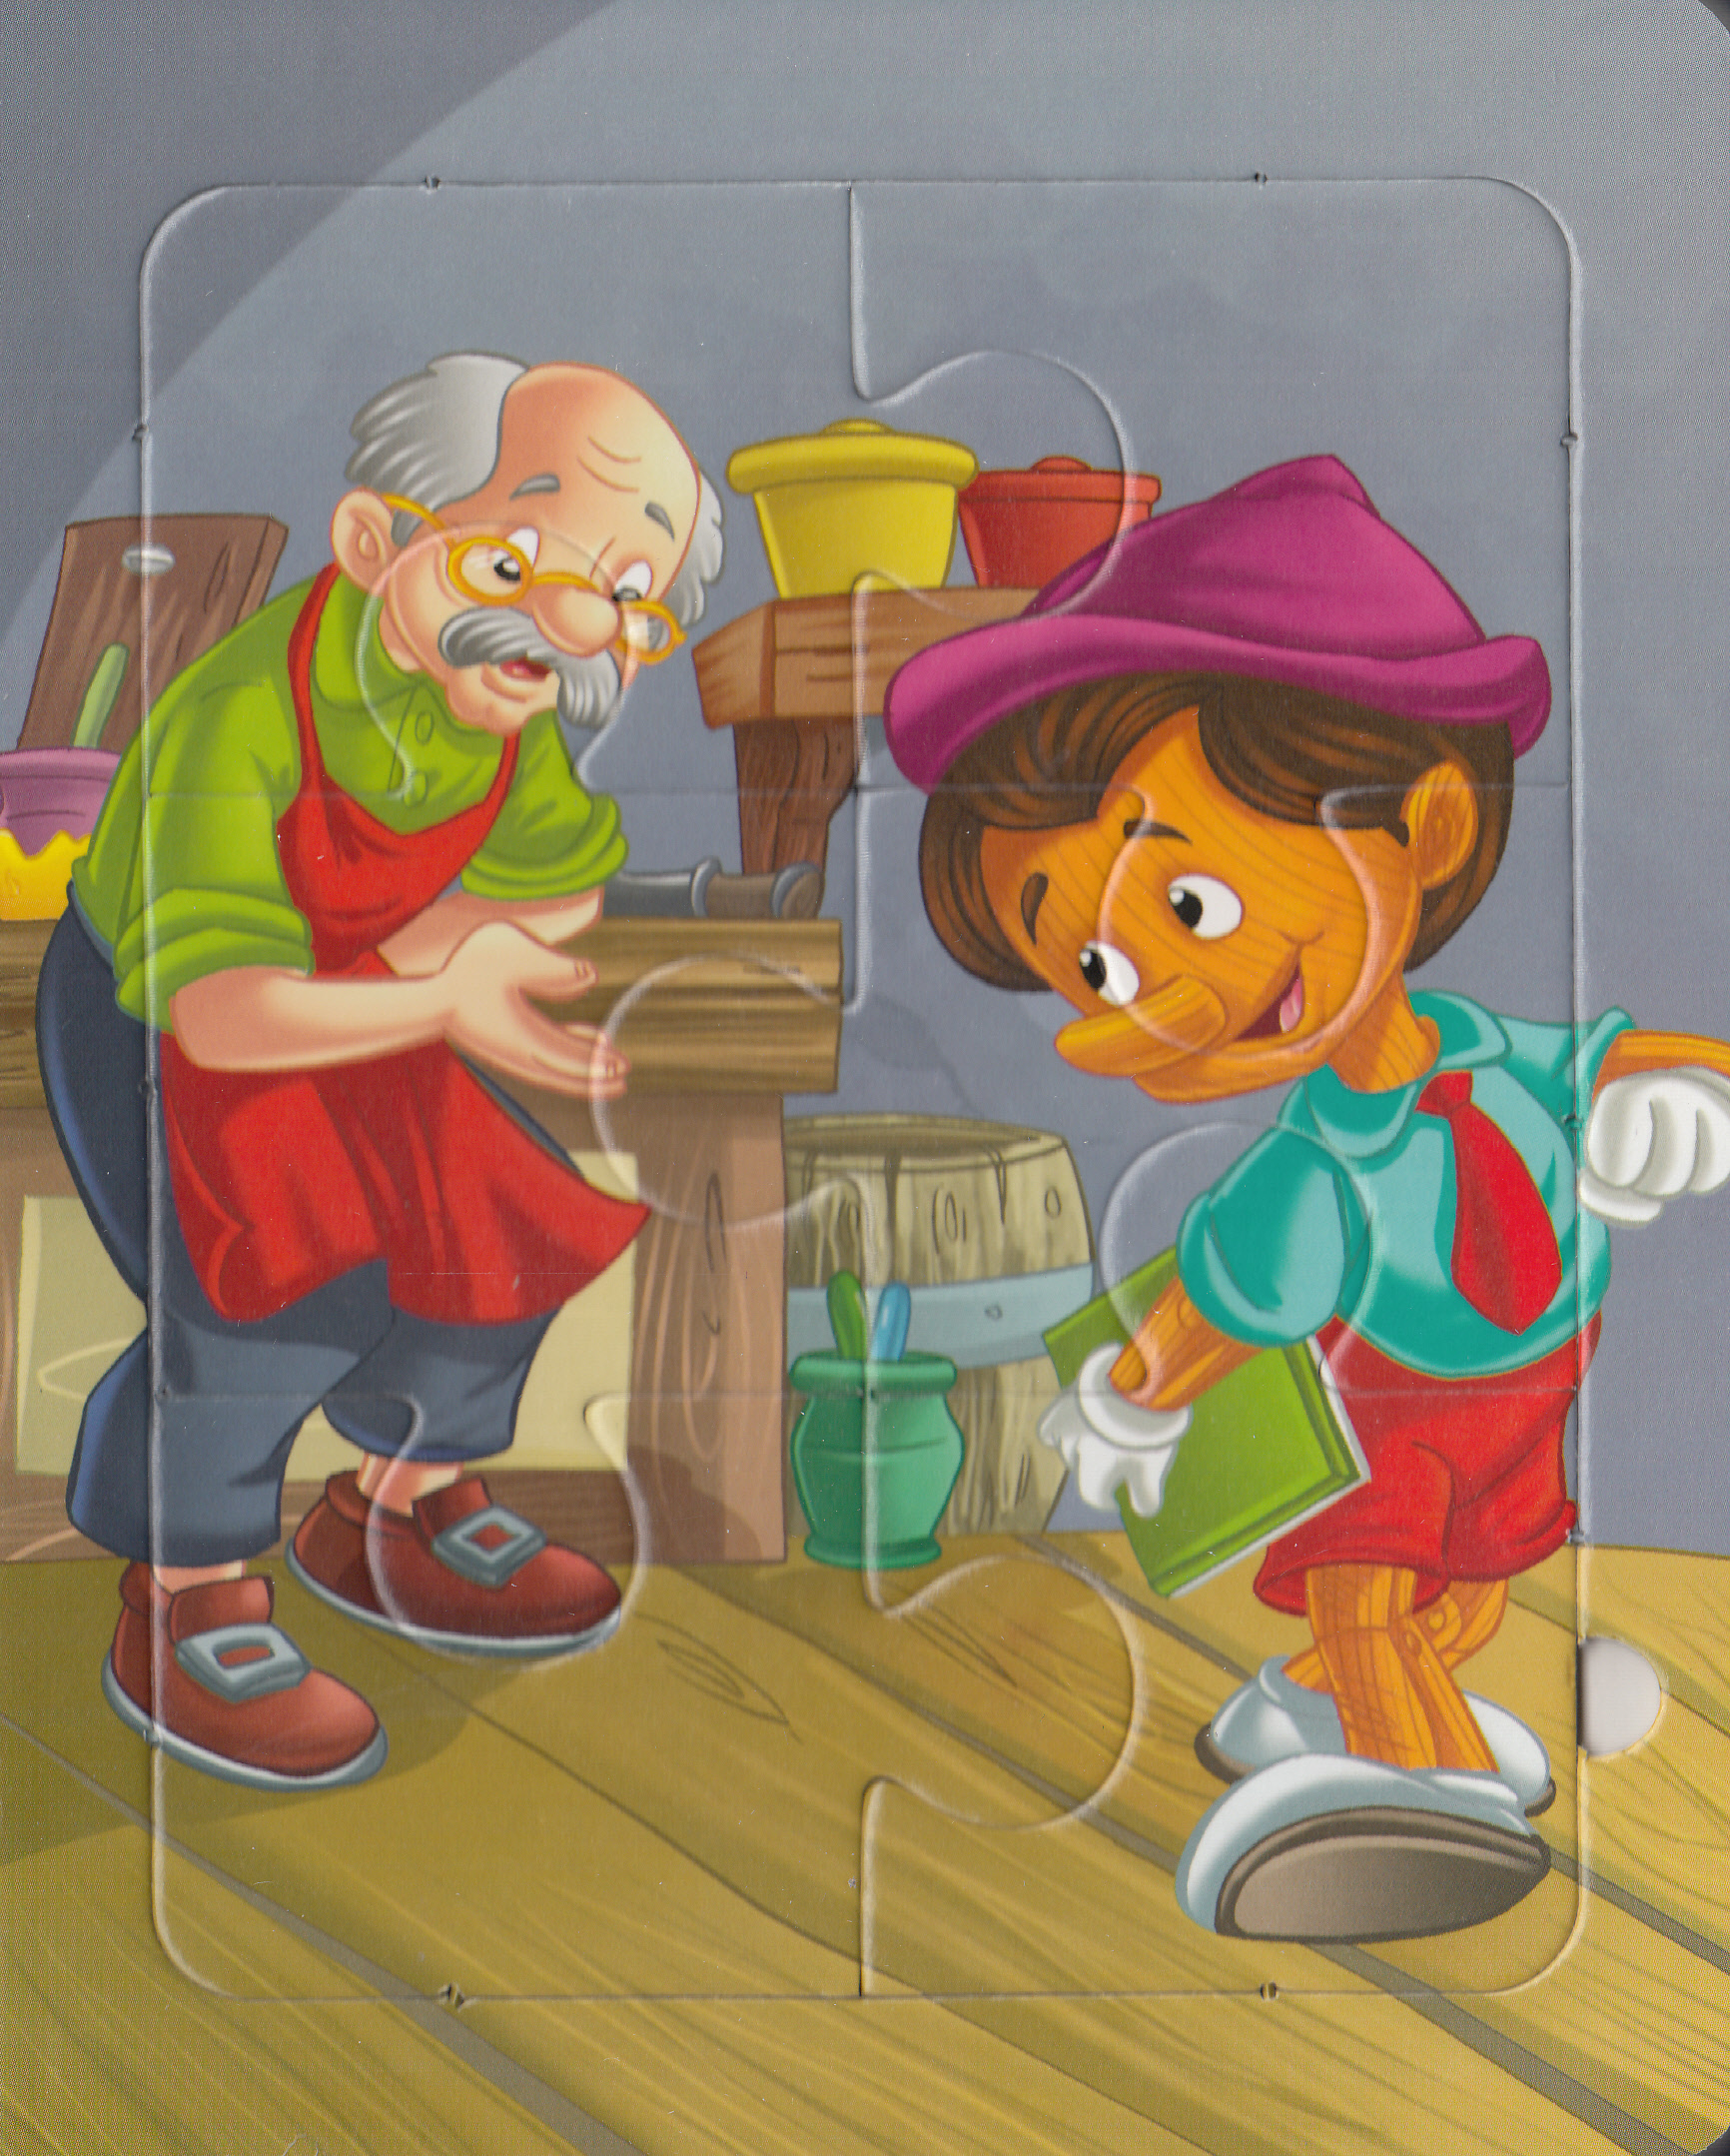 Aventurile lui Pinocchio (Povesti cu puzzle)